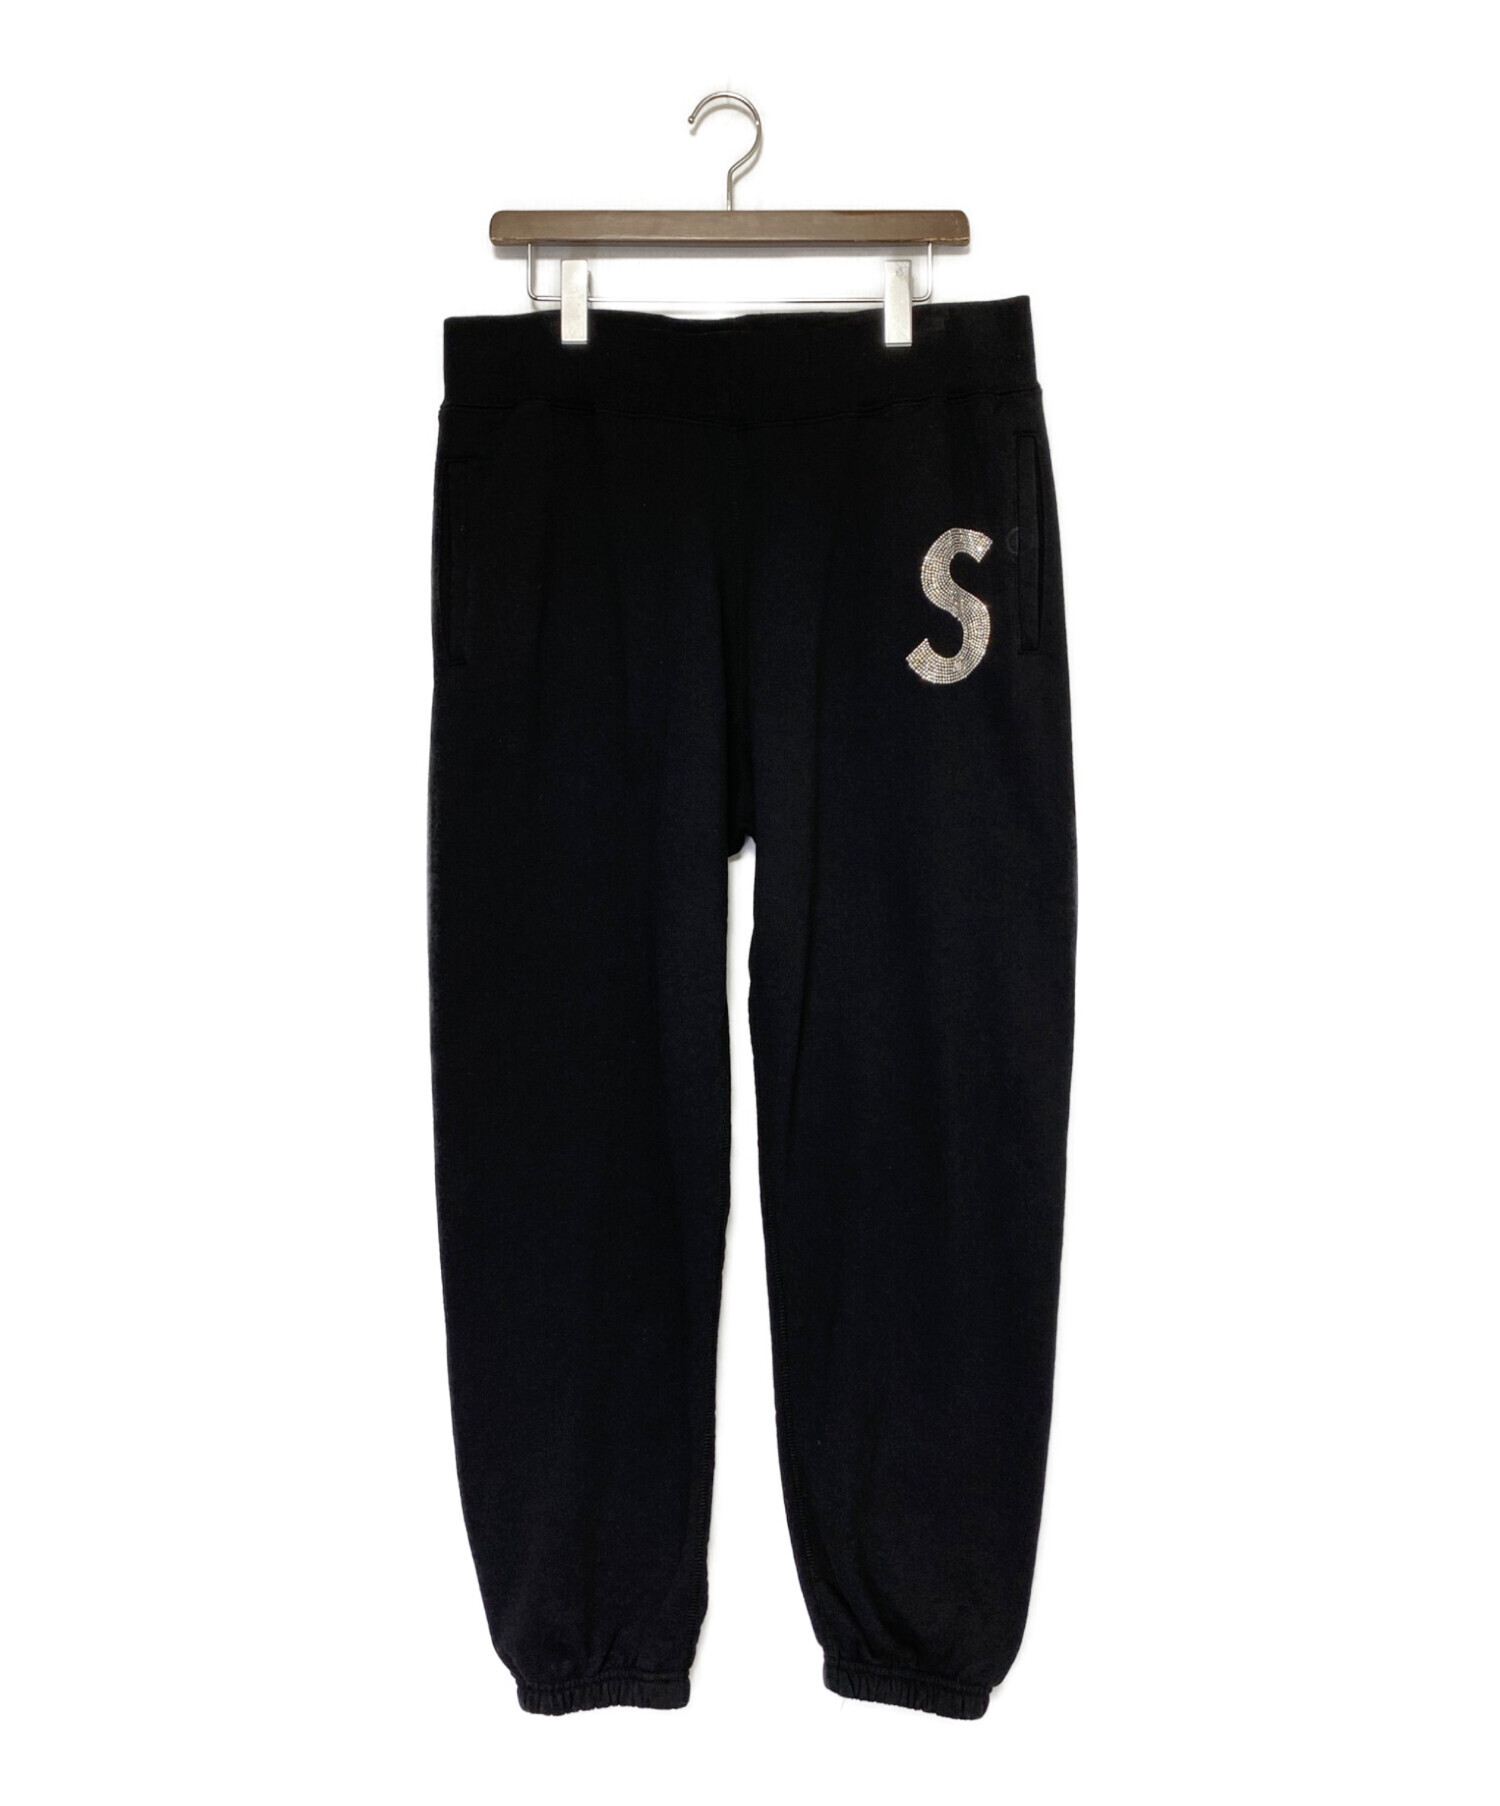 【新品】Supreme slogo sweatpants SizeL